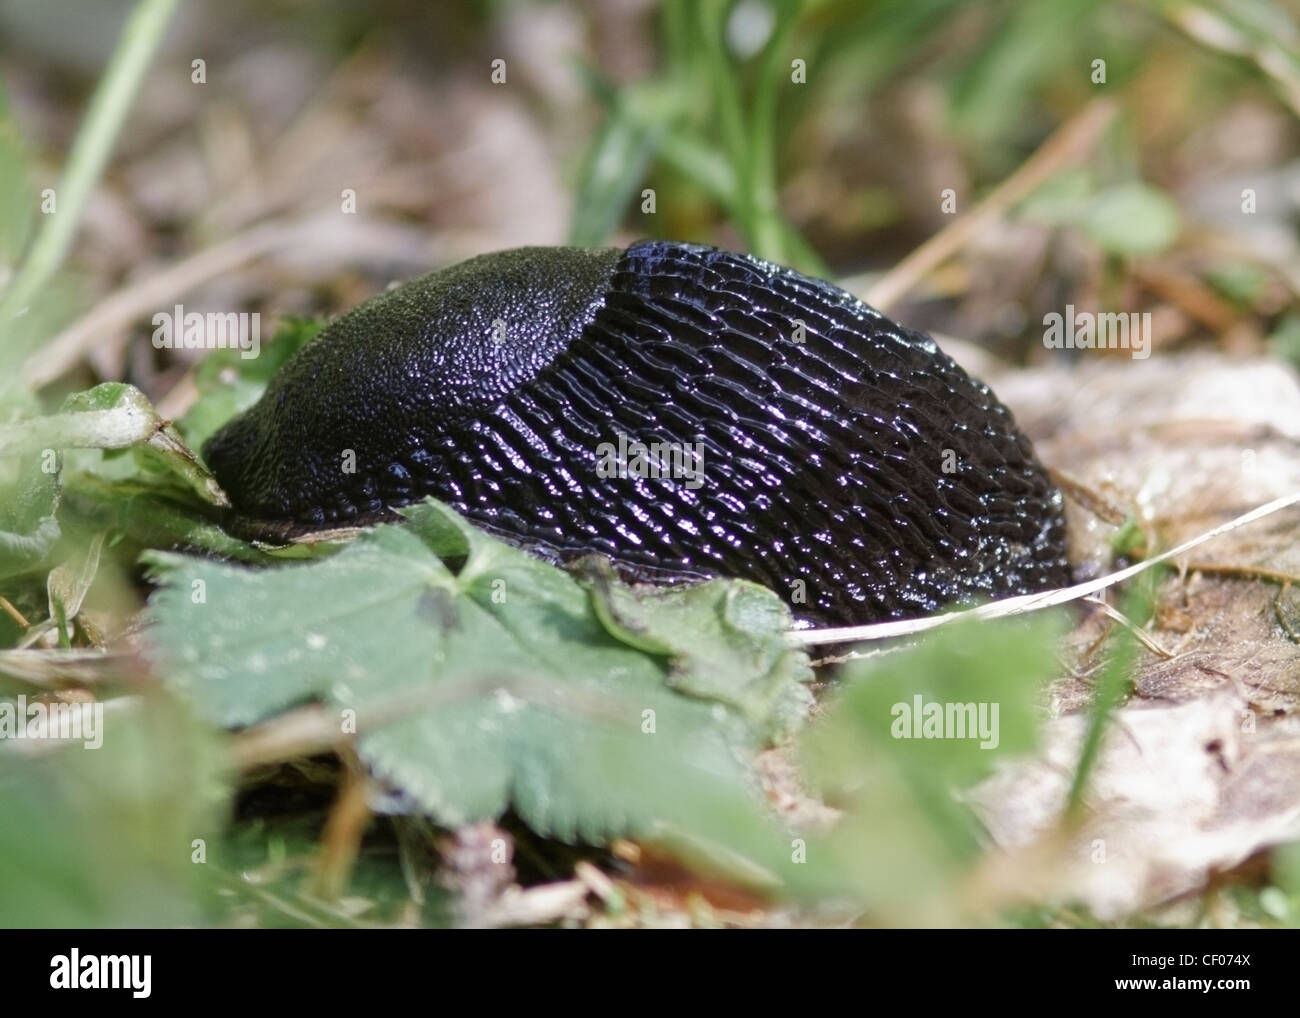 Europäische schwarze Schnecke (Arion Ater), auch bekannt als Black Slug, Black Arion oder große schwarze Schnecke Stockfoto